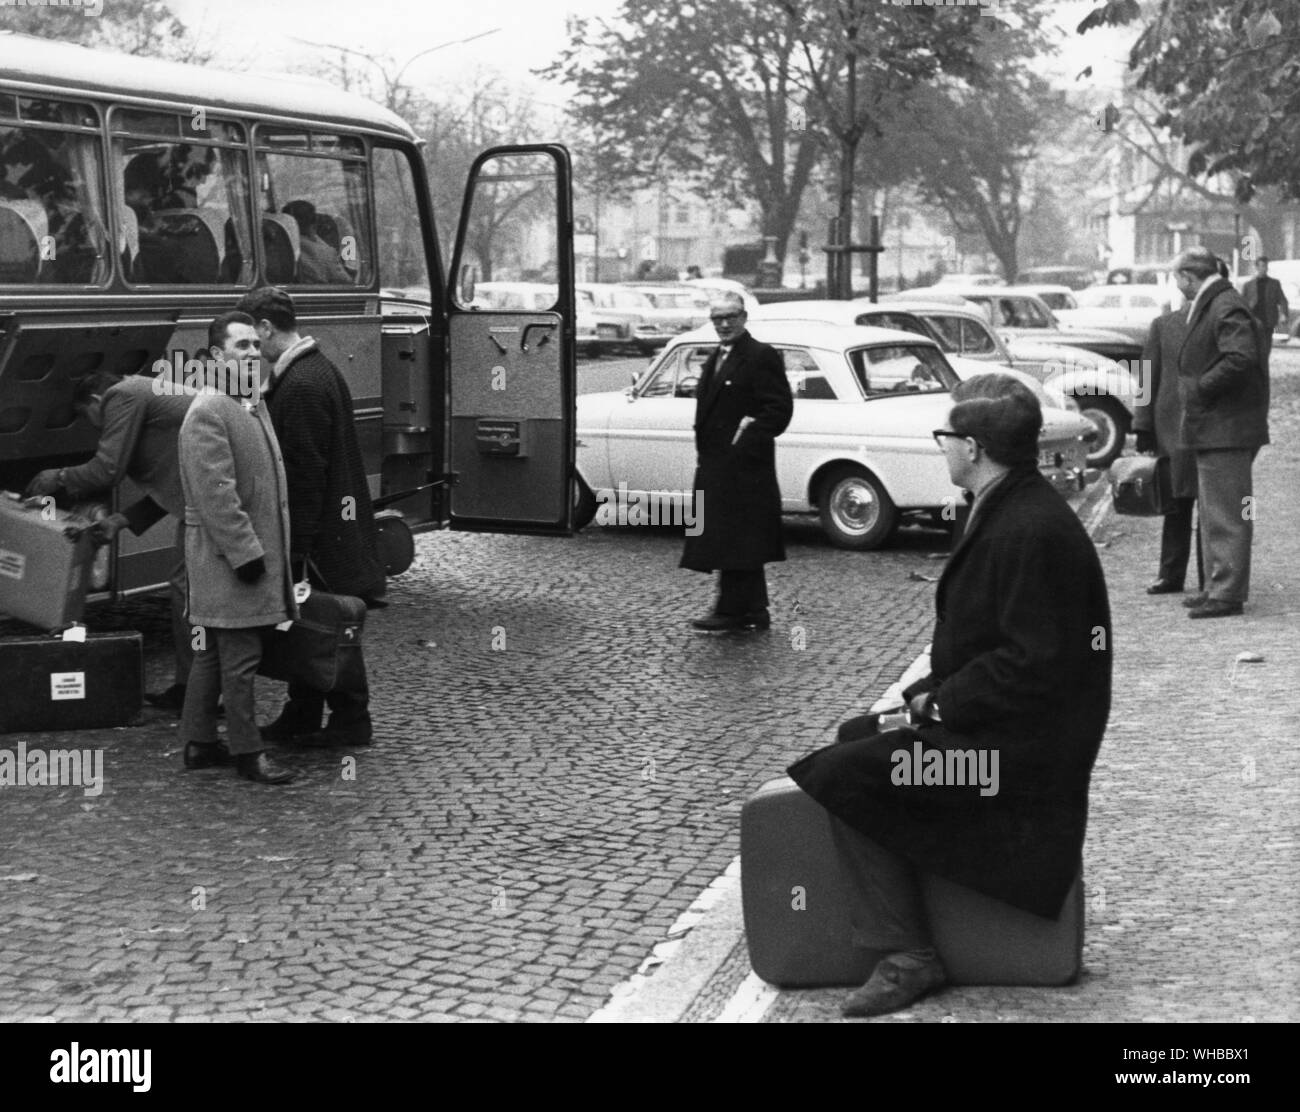 Viaja desde el concierto concierto implica mucho colgando sobre - miembros de la orquesta esperando a bordo de un autobús. Foto de stock